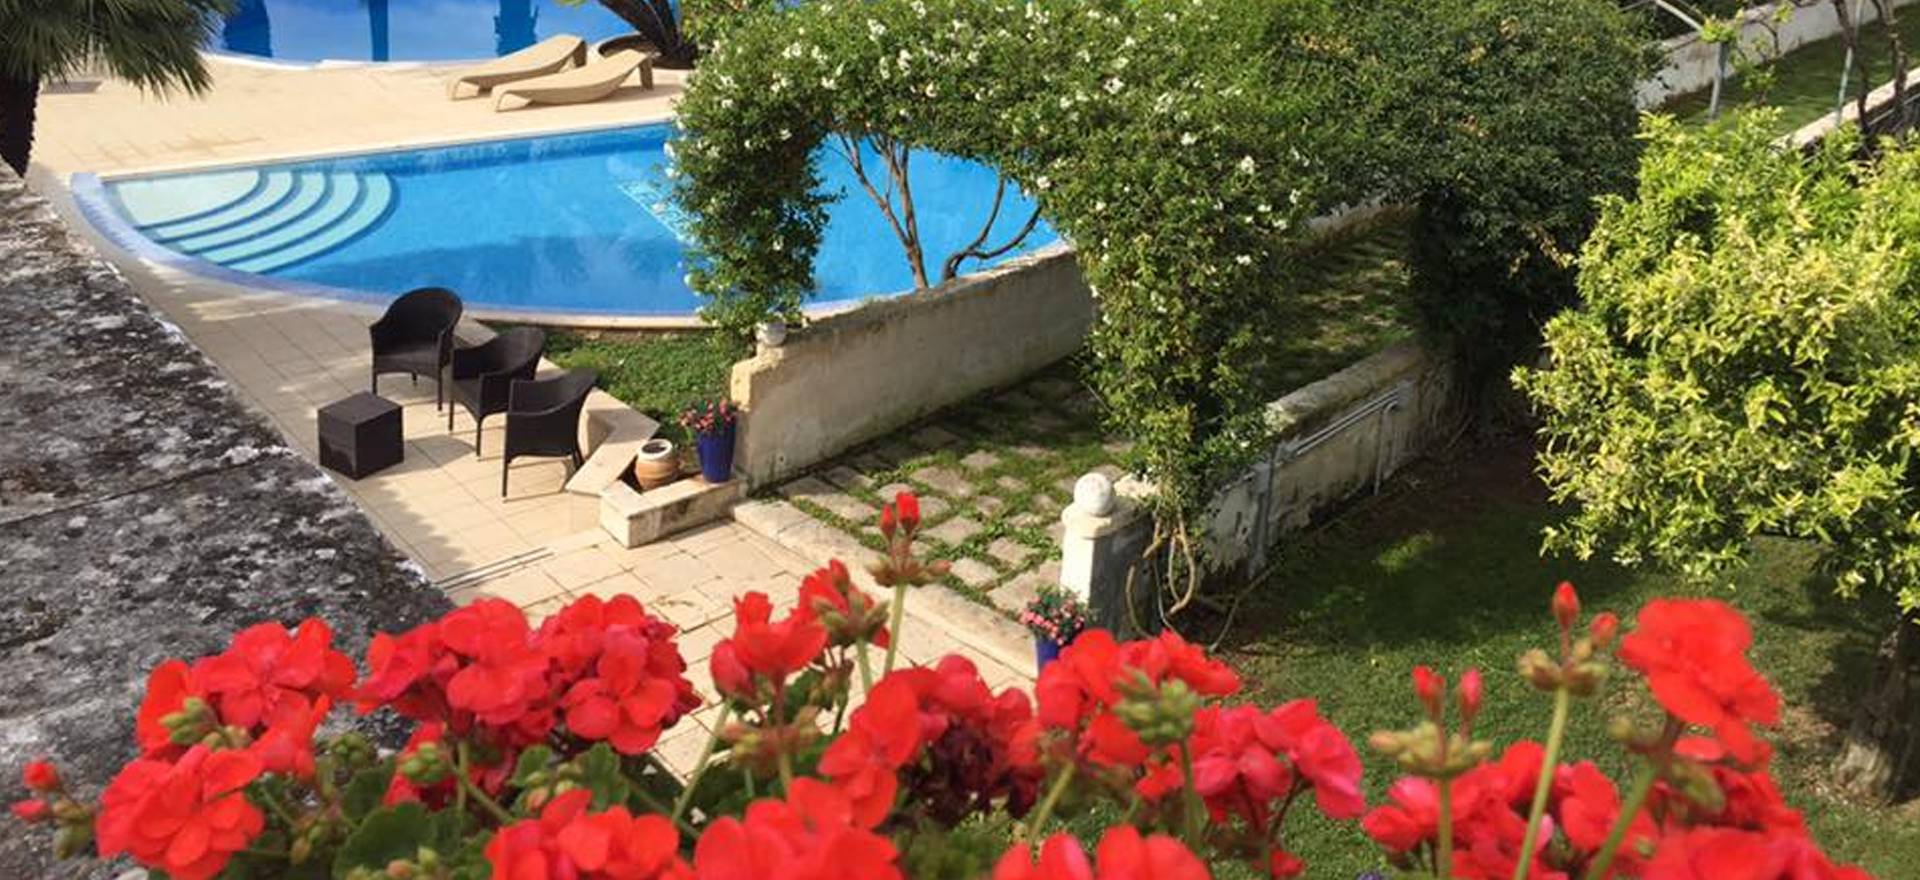 Karakteristieke agriturismo met fantastisch zwembad in Puglia